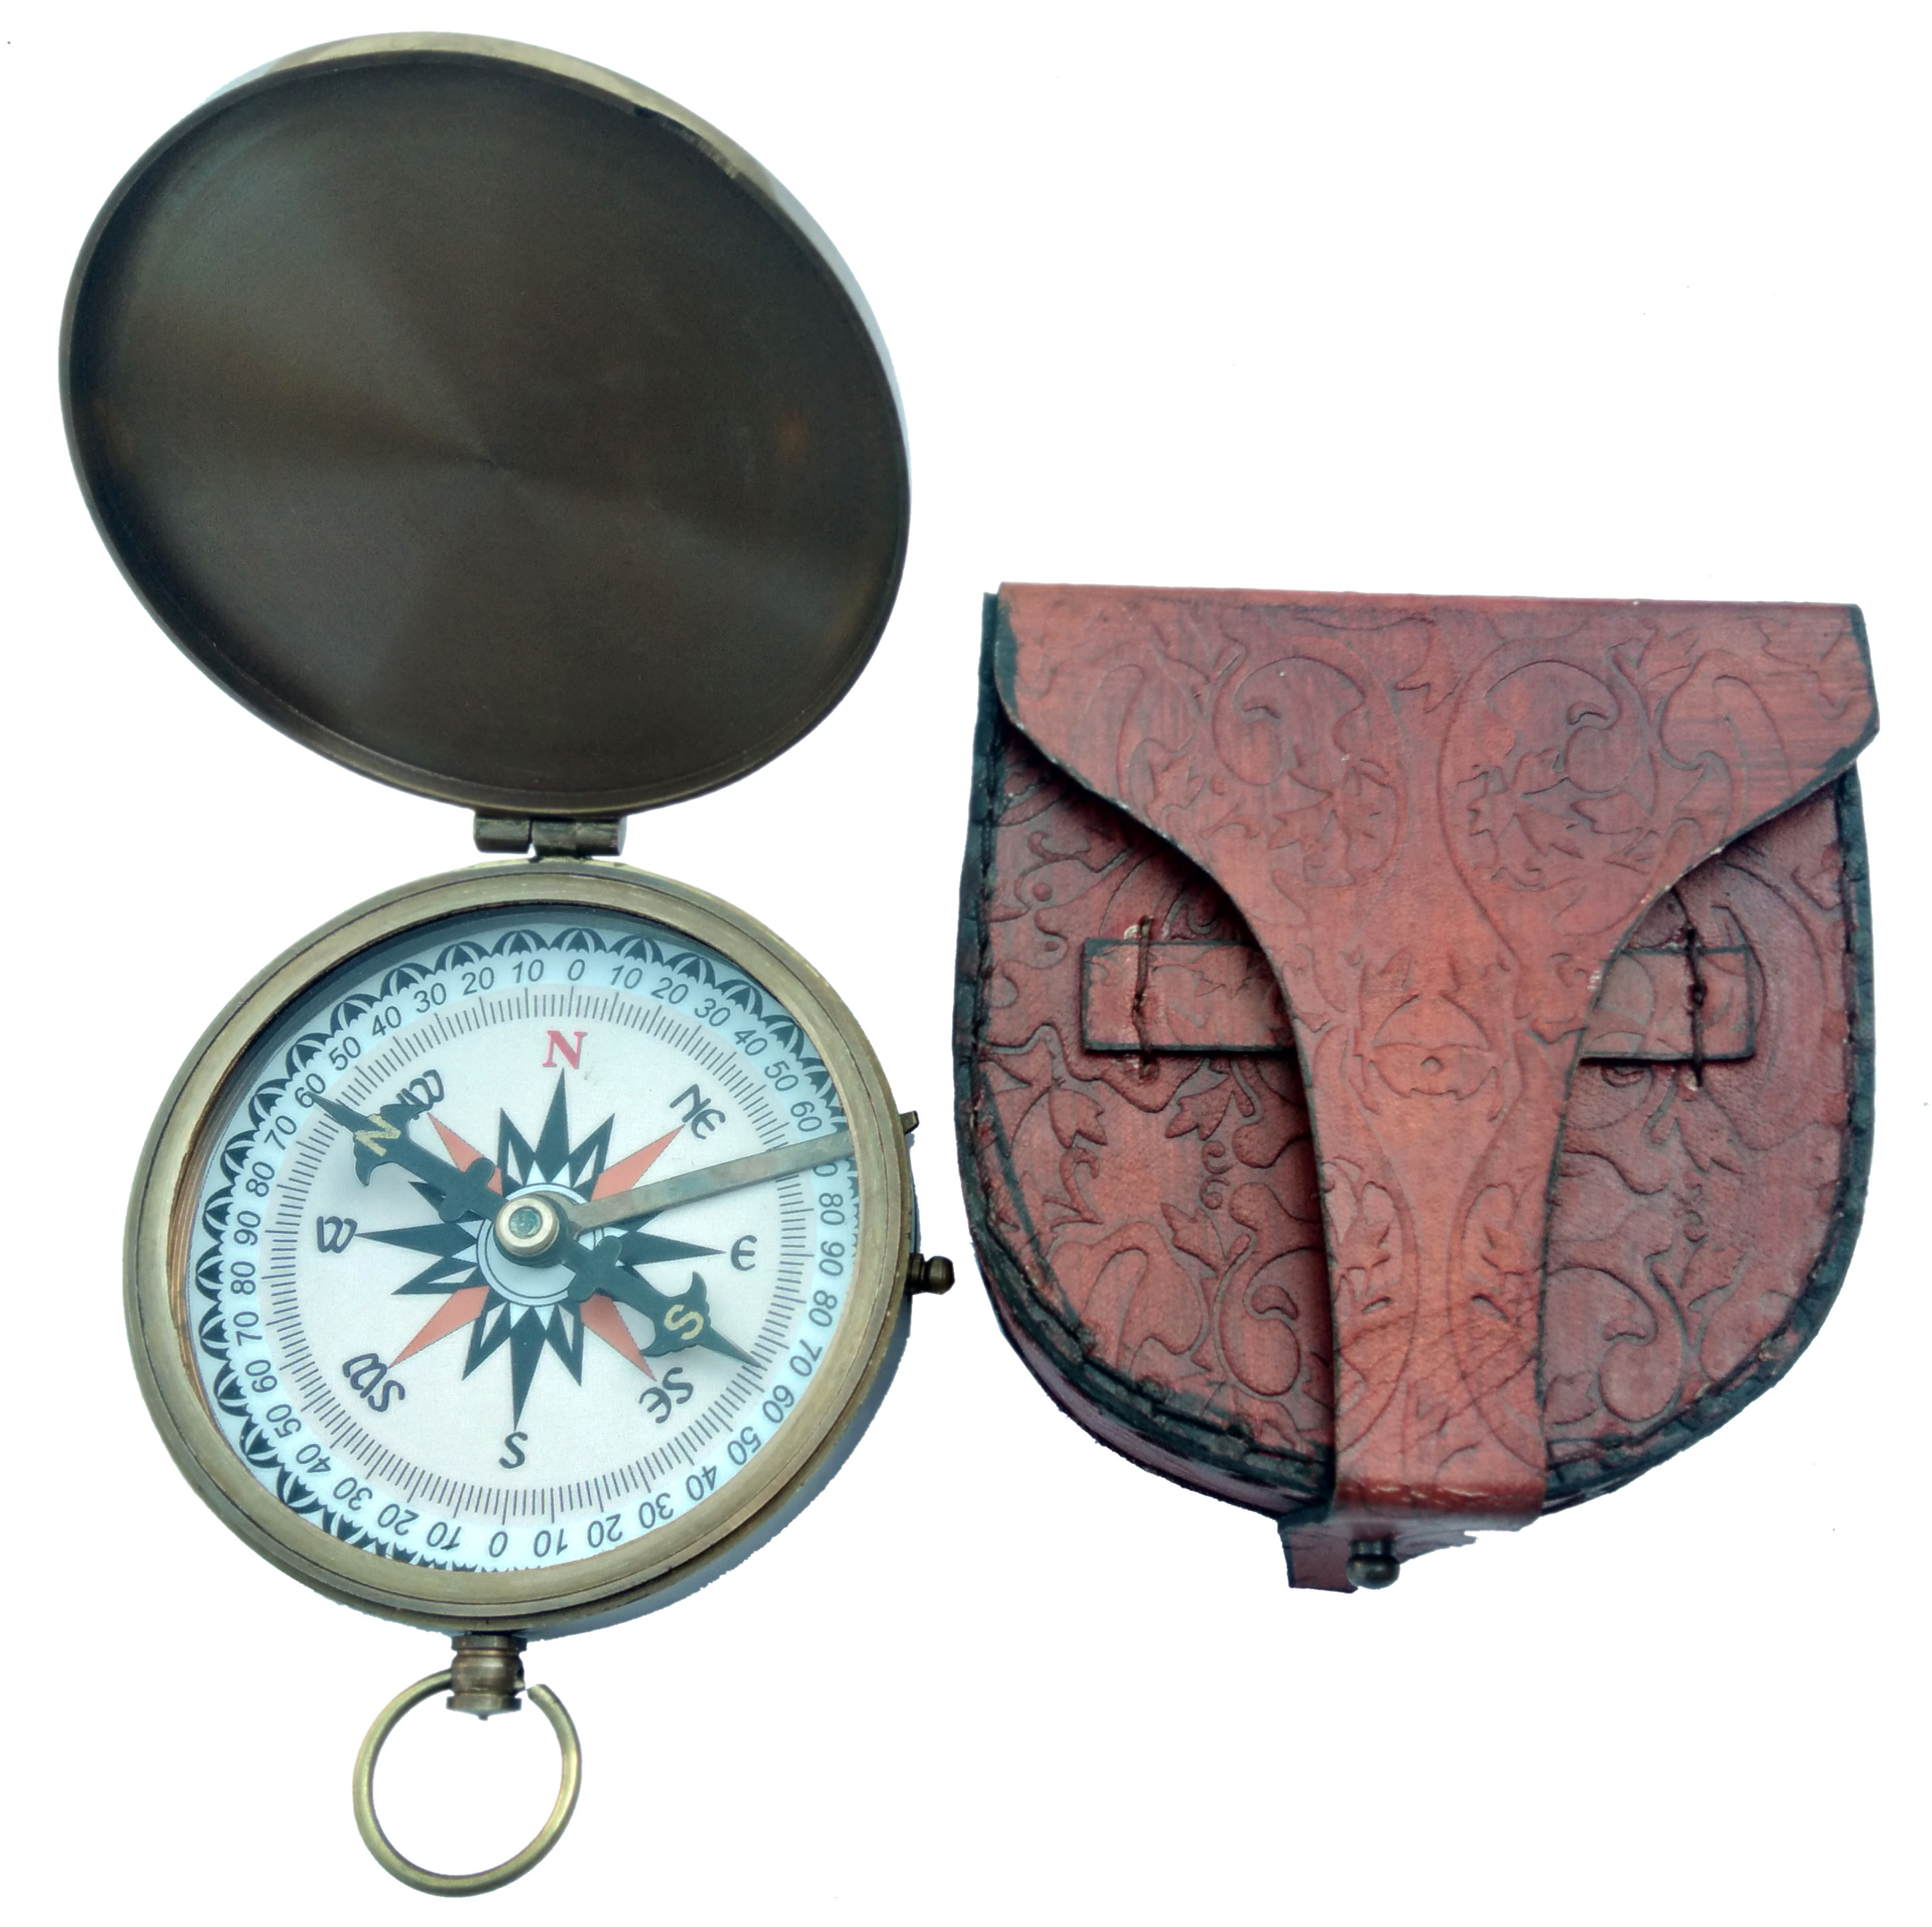 Robert Frost Compass